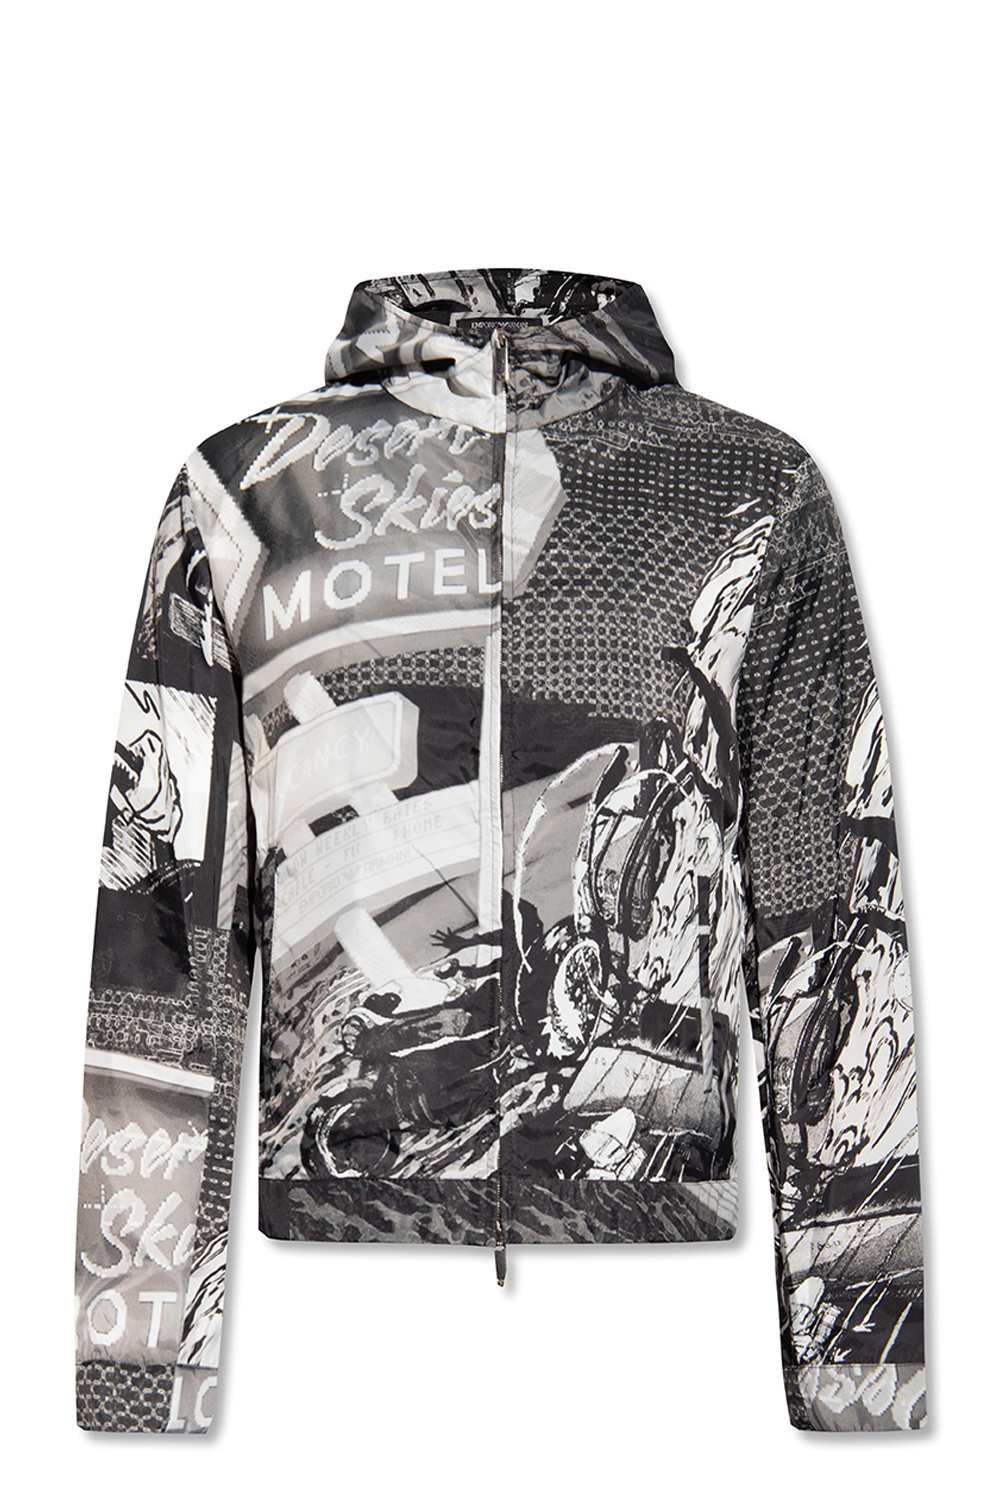 Emporio Armani ‘Racing’ collection jacket